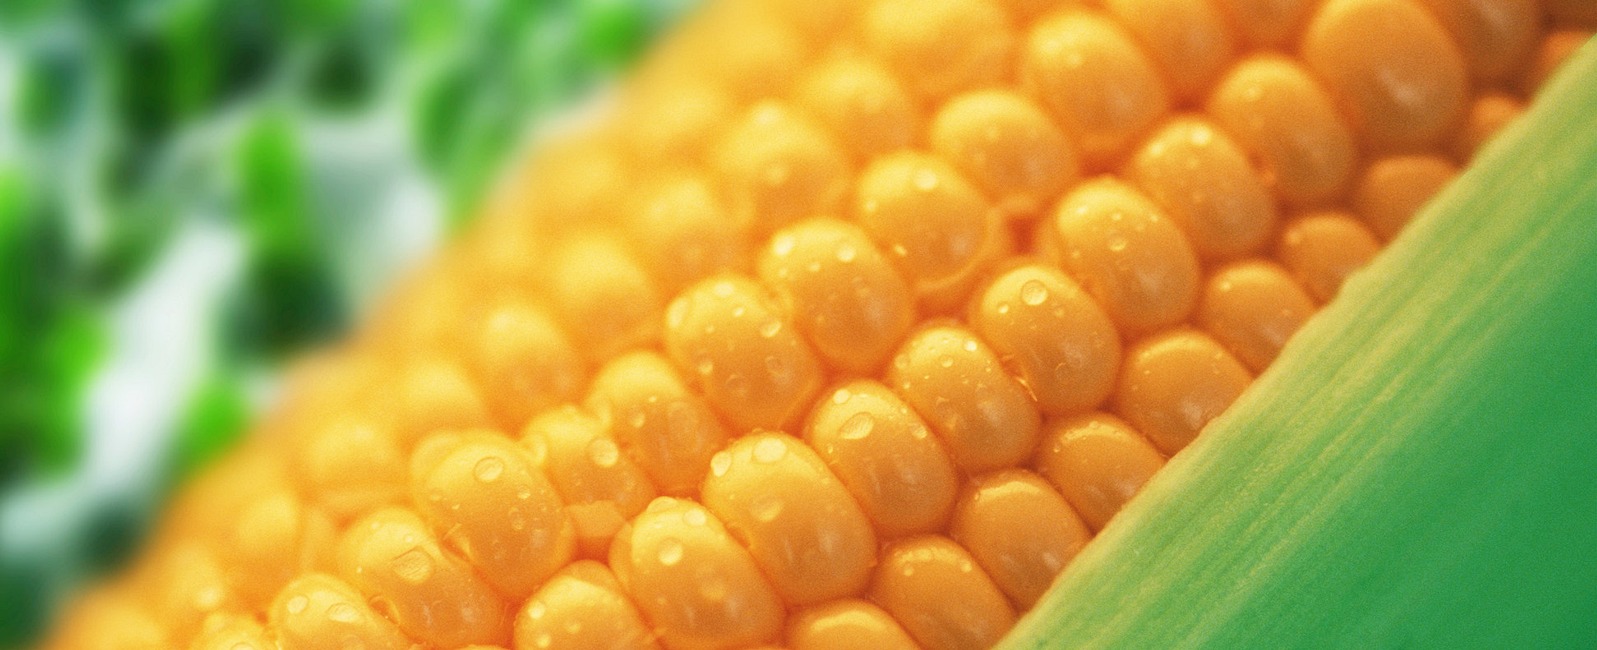 Impatto sulla sanità del mais